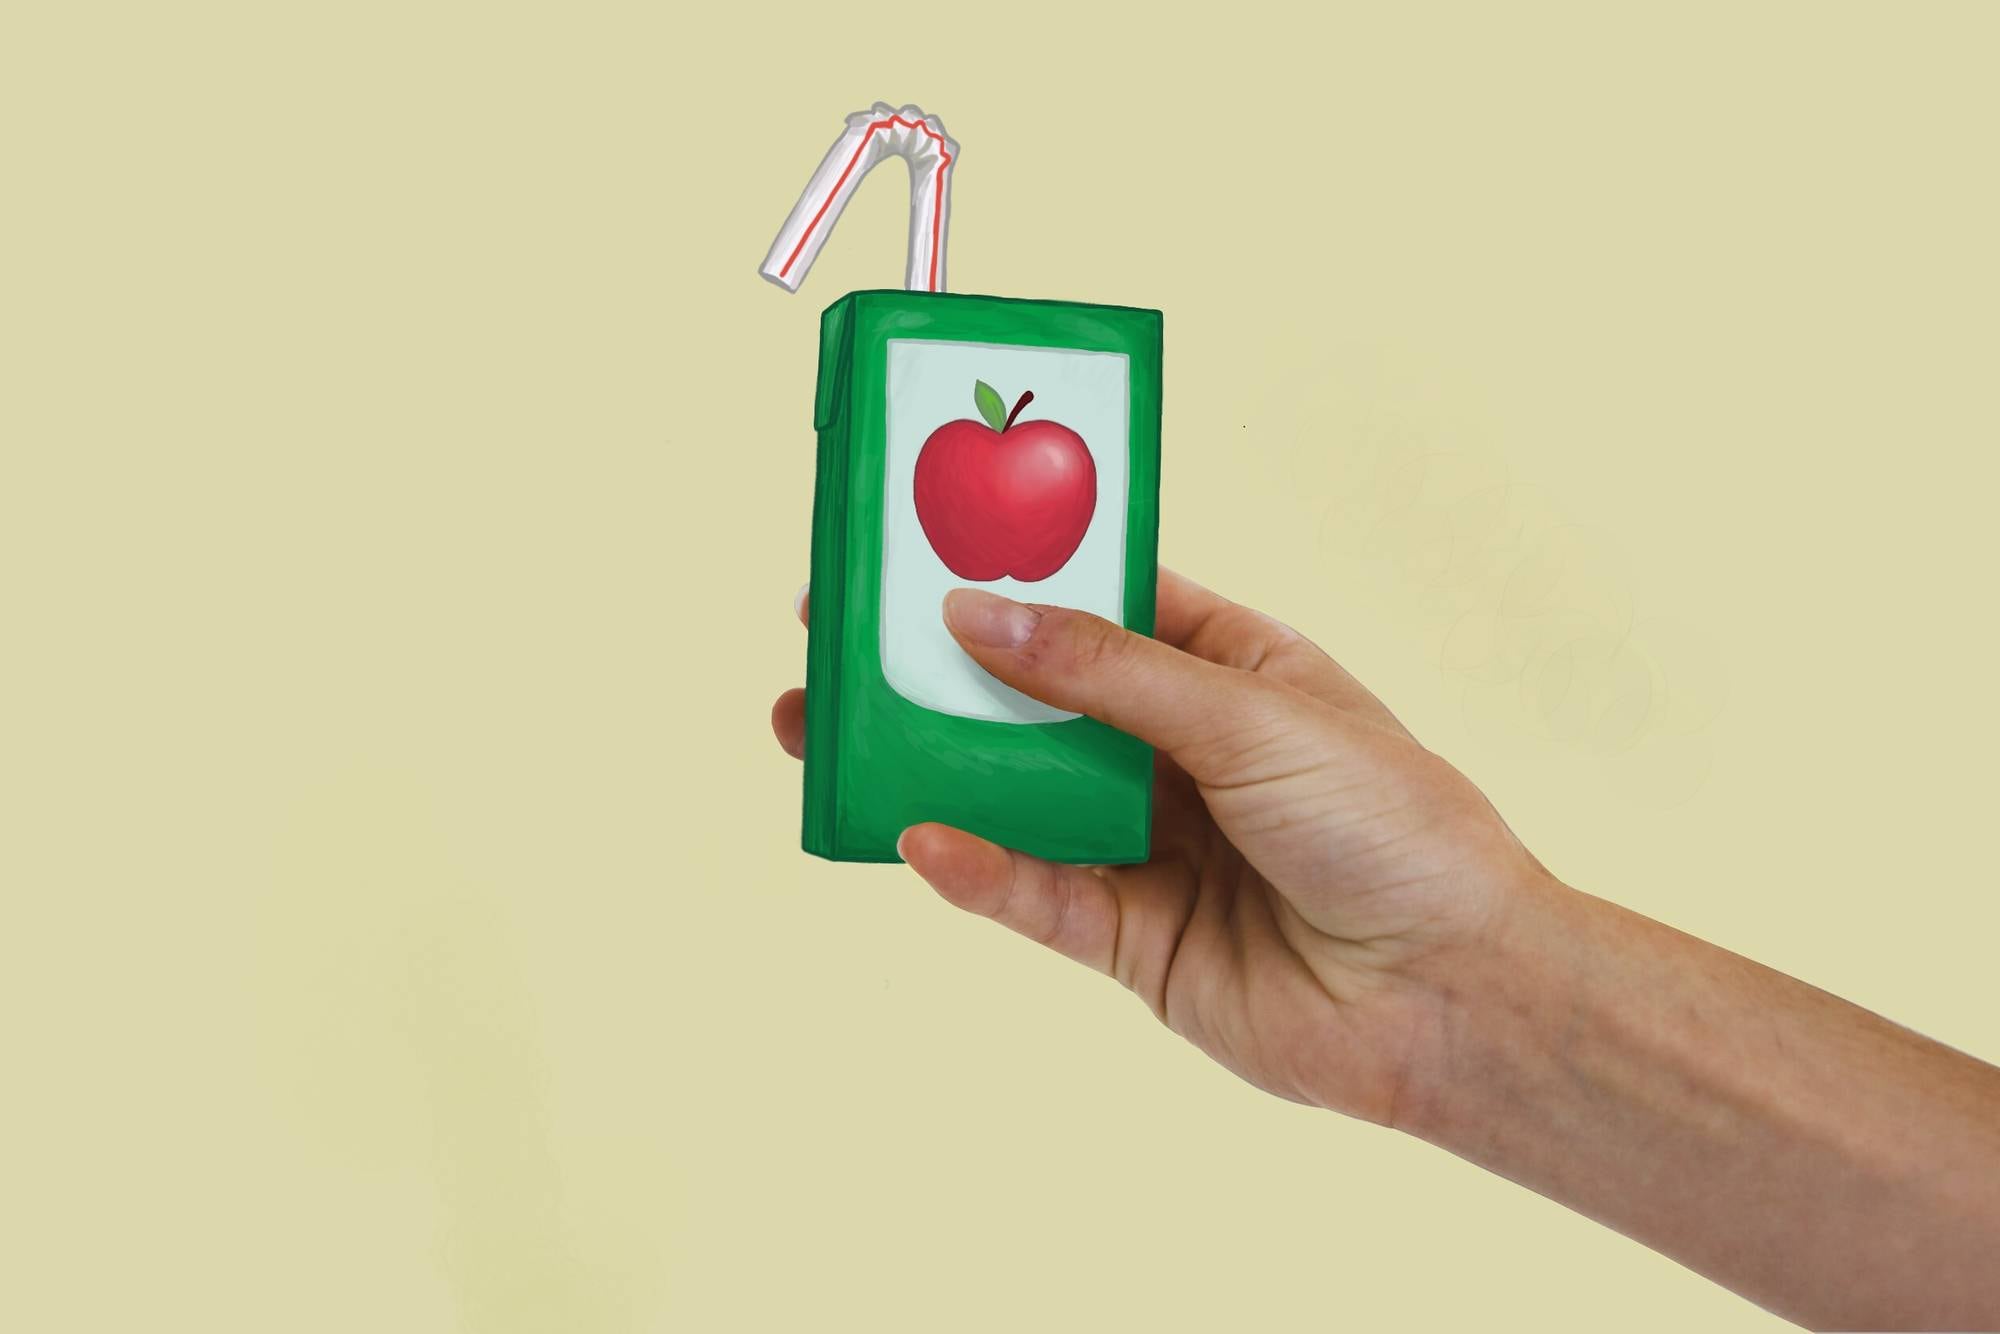 Et bilde av en hånd som holder en illustrert juiceboks.